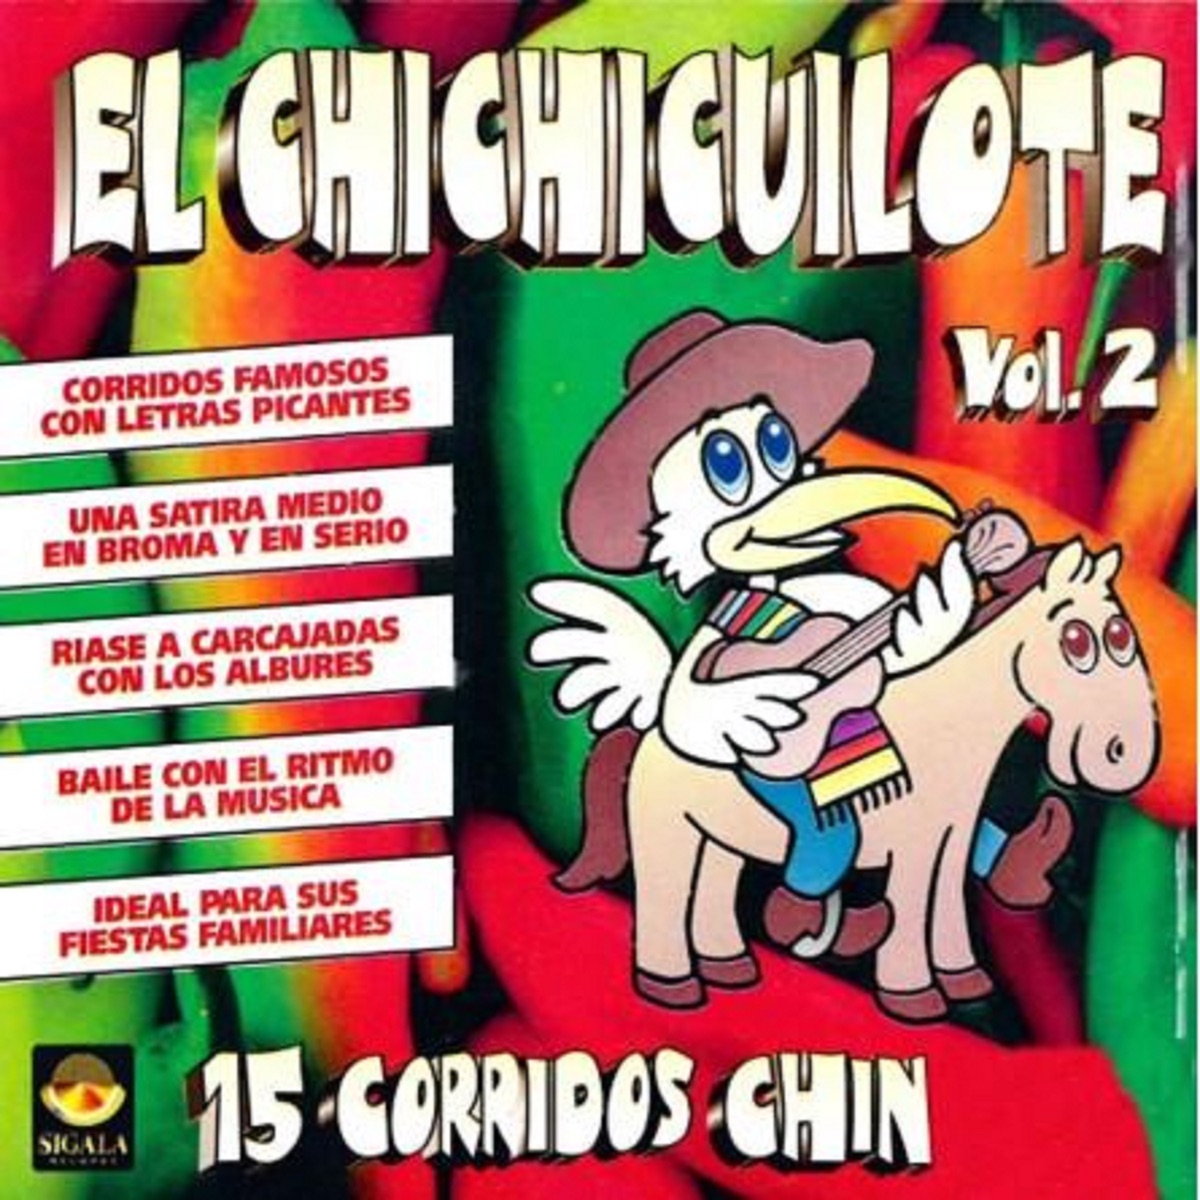 Despacito y el Pasito Perrón by El Chichicuilote on Apple Music